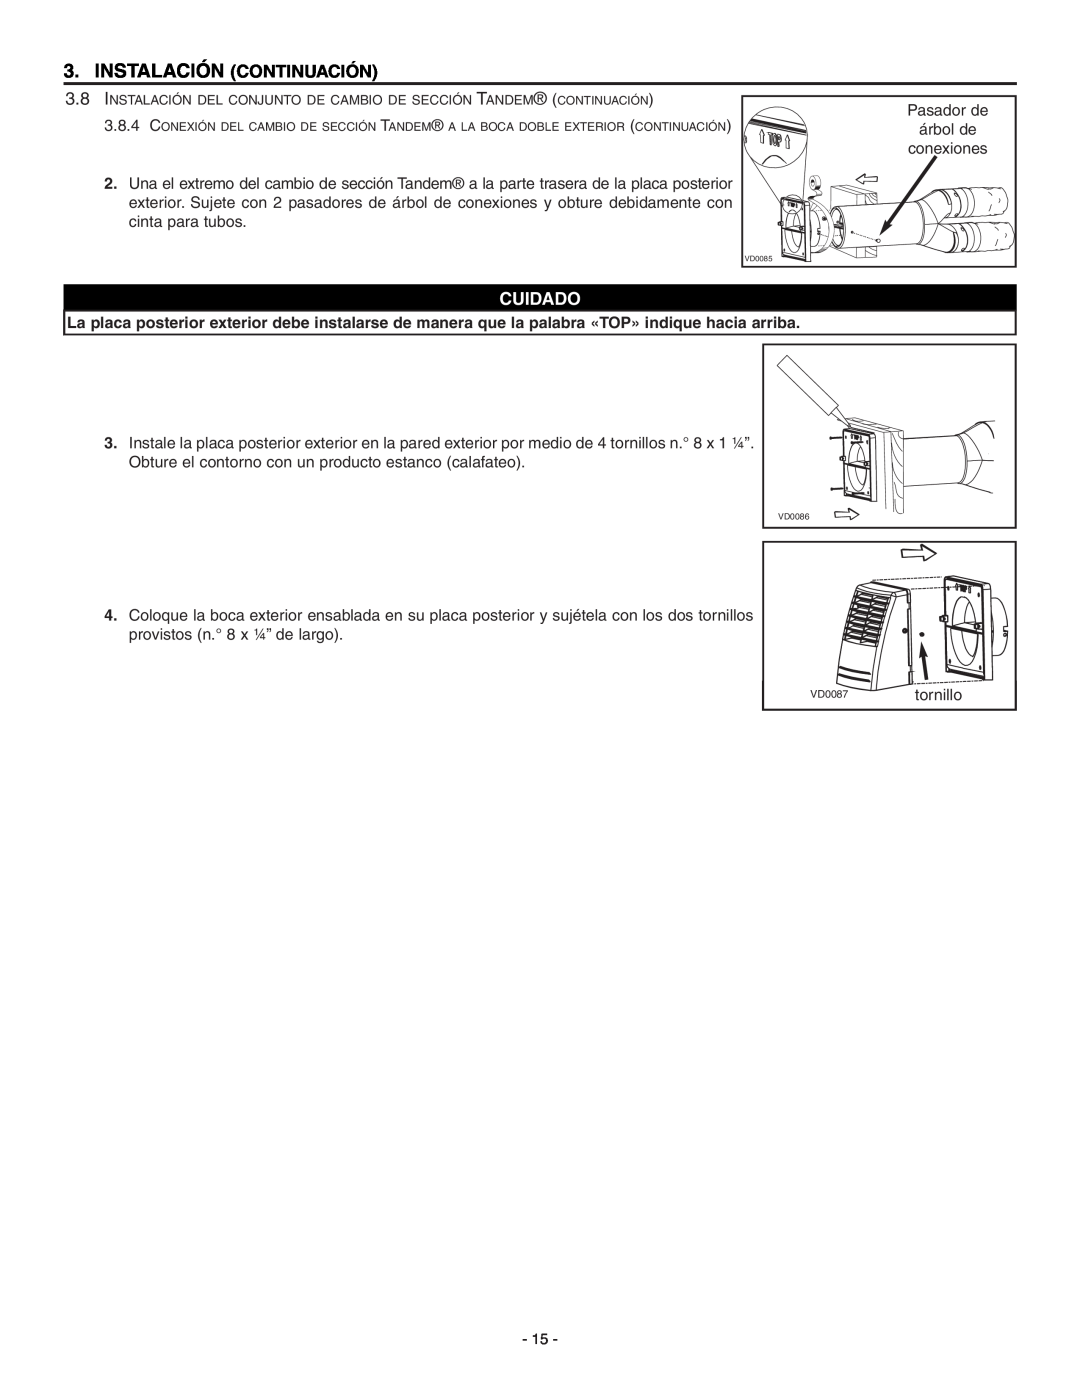 Broan ERV90HCT installation instructions Instalación Continuación, Cuidado, Pasador de, árbol de, conexiones, tornillo 